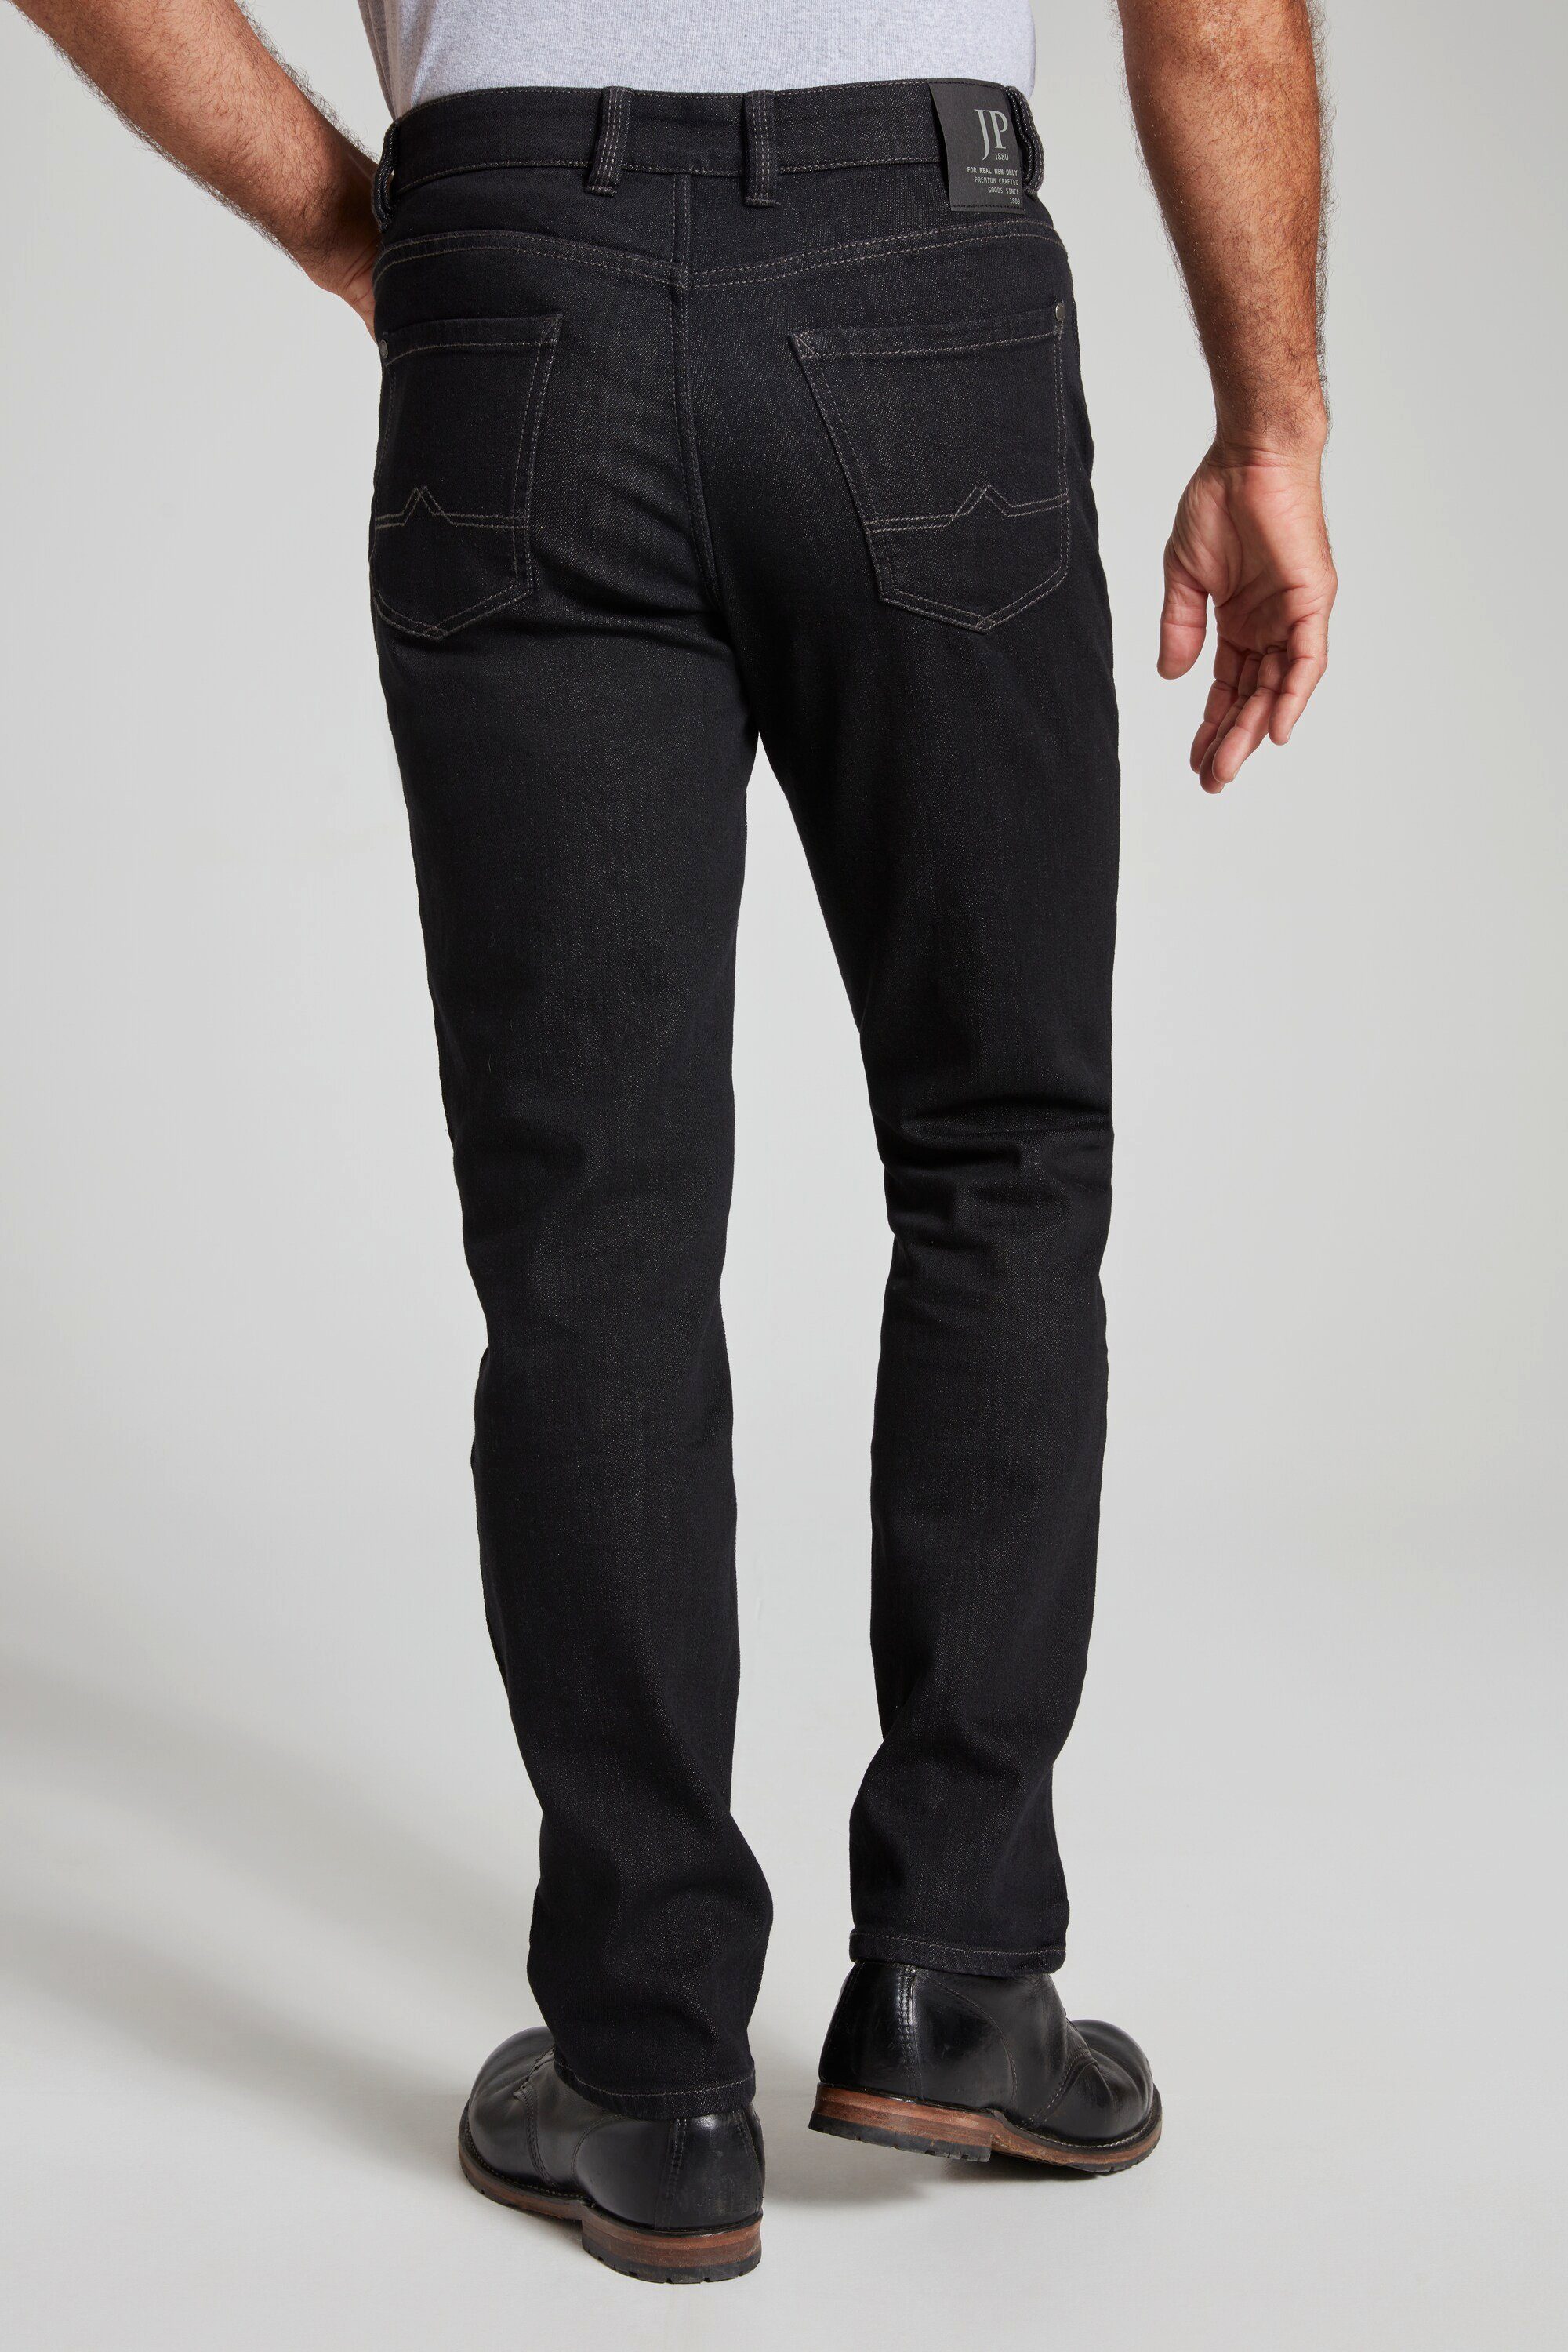 Dehnbund 5-Pocket Regular Fit Jeans Cargohose Denim-Stretch black JP1880